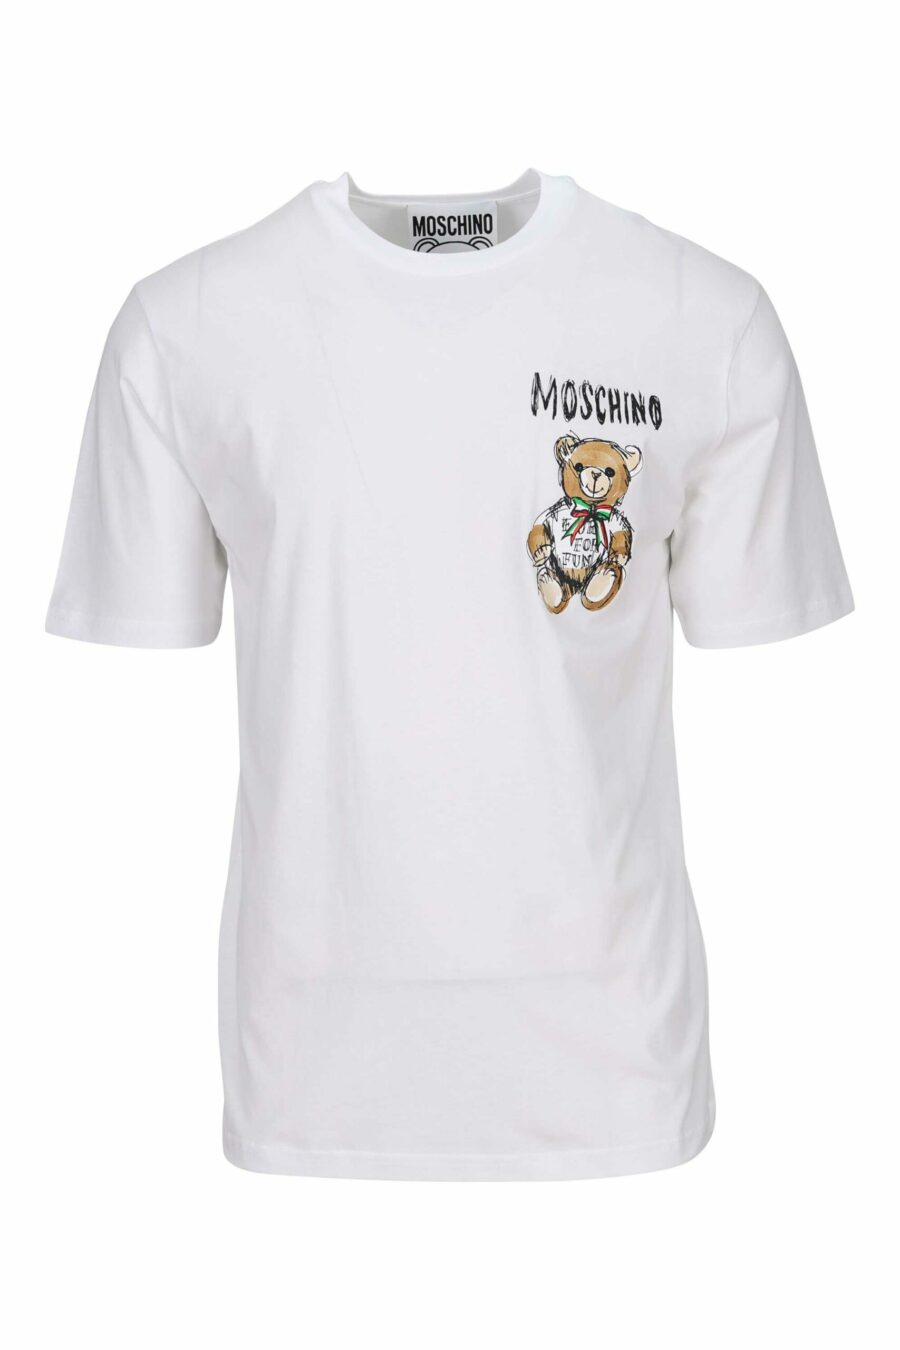 T-shirt branca com desenho de mini logótipo de urso - 667113767673 à escala